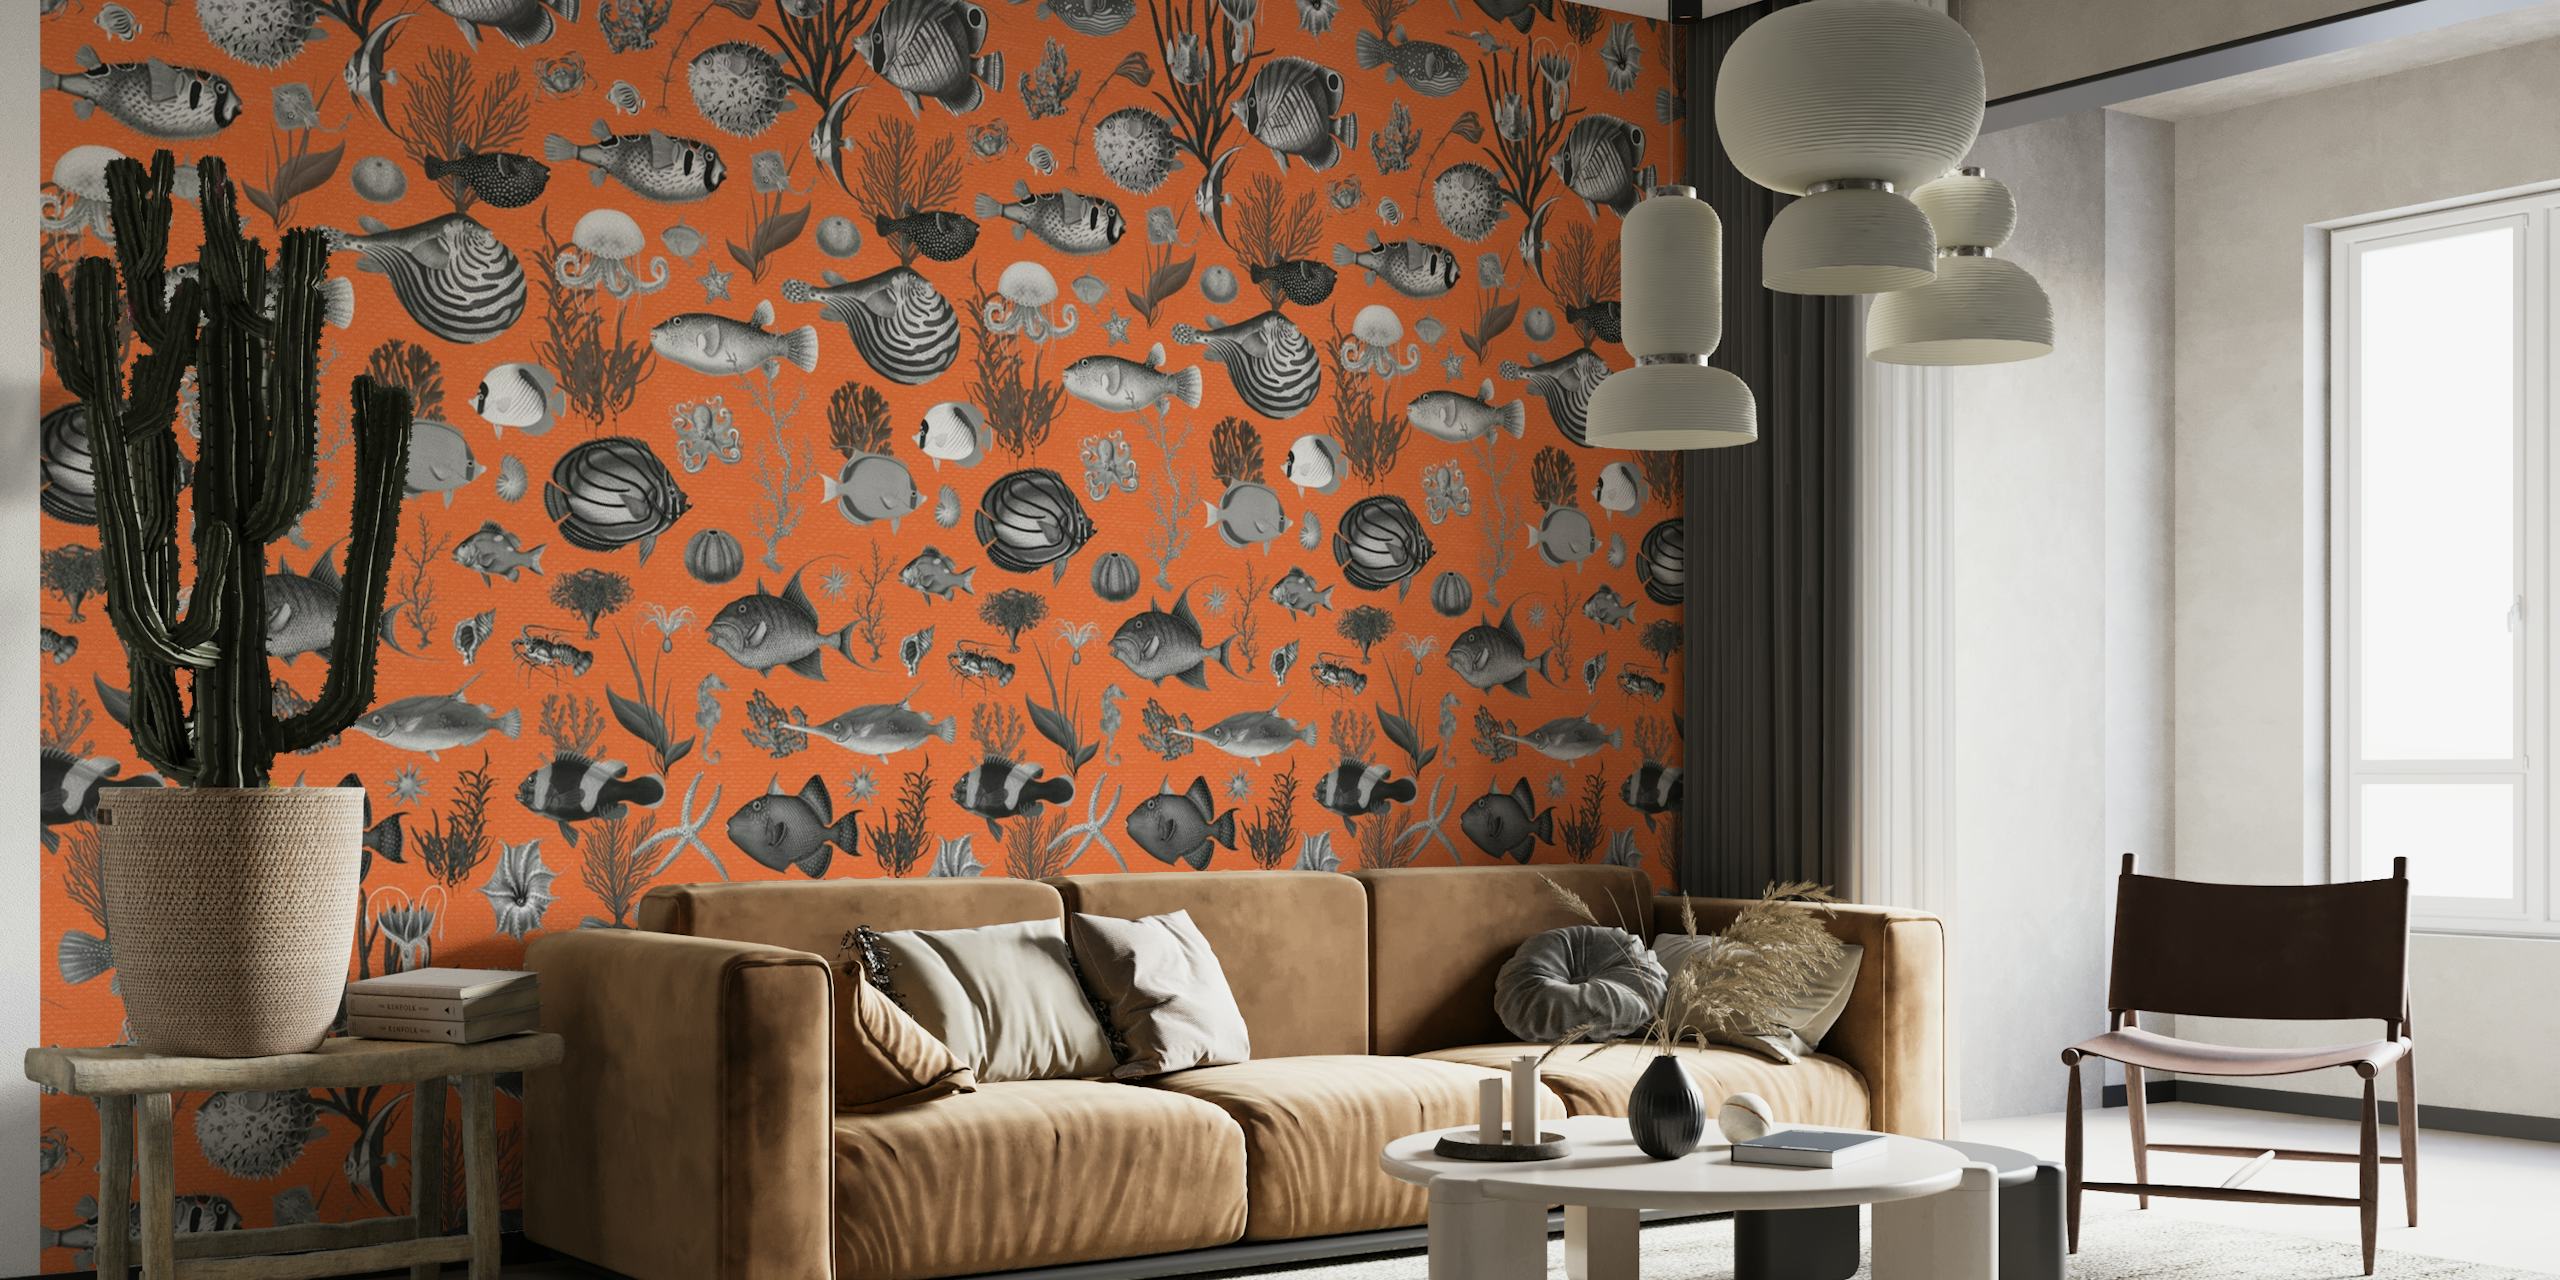 Apstraktna zidna slika inspirirana oceanom sa sivim i narančastim morskim uzorcima